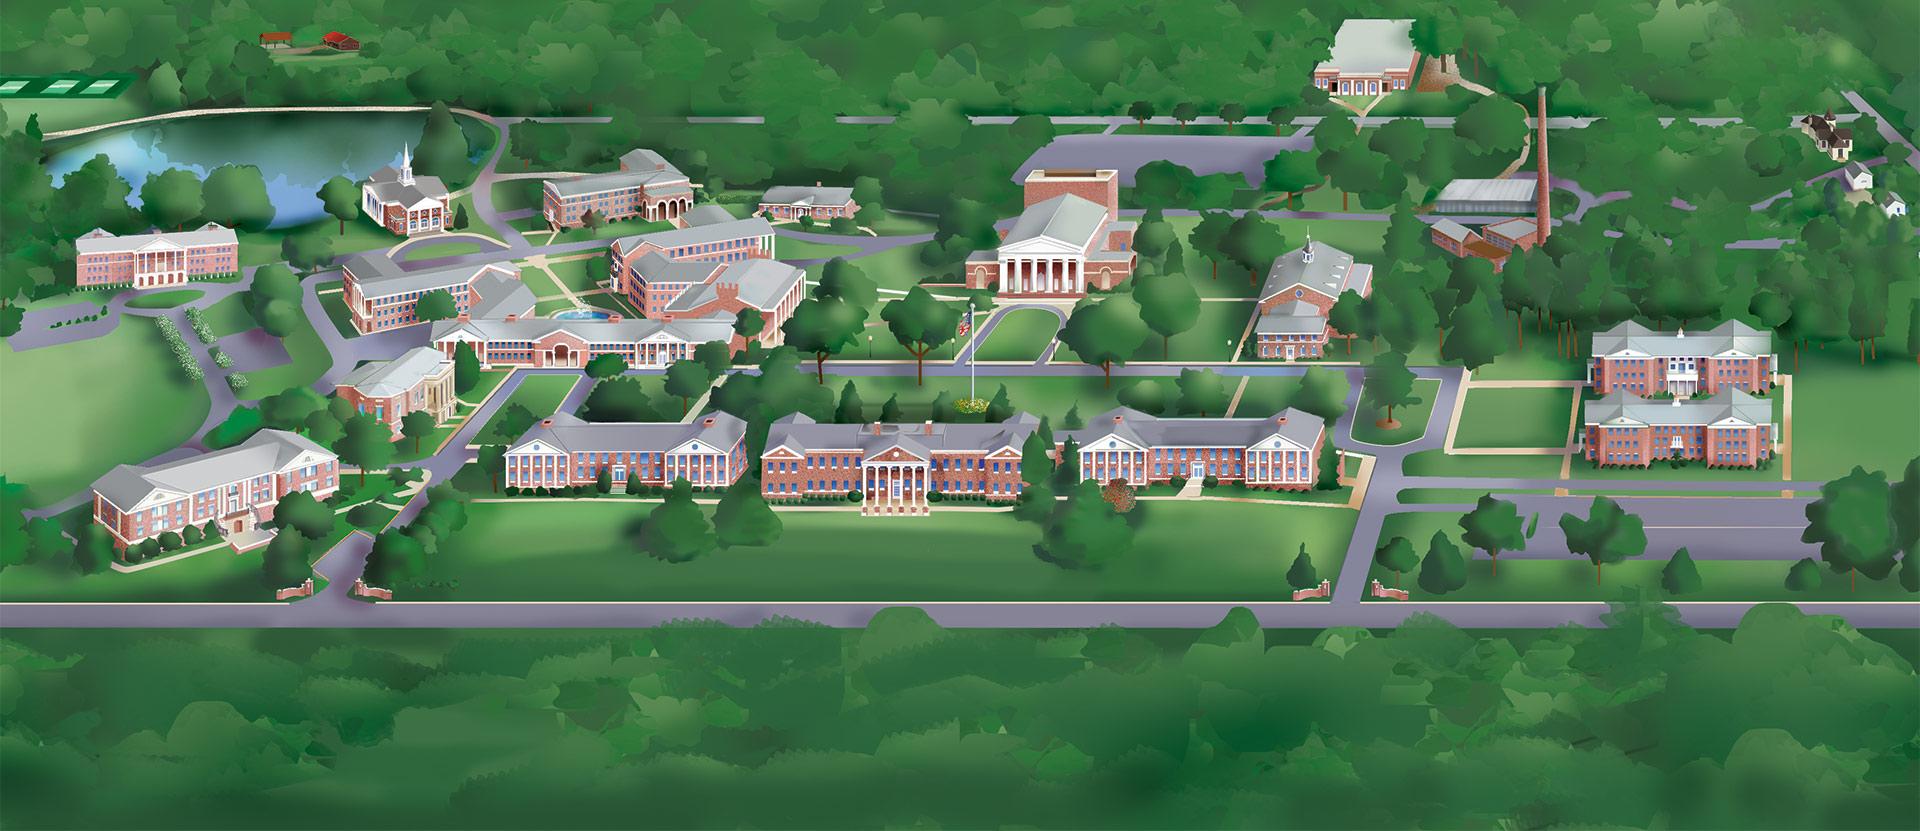 Ariel map of Wesleyan campus